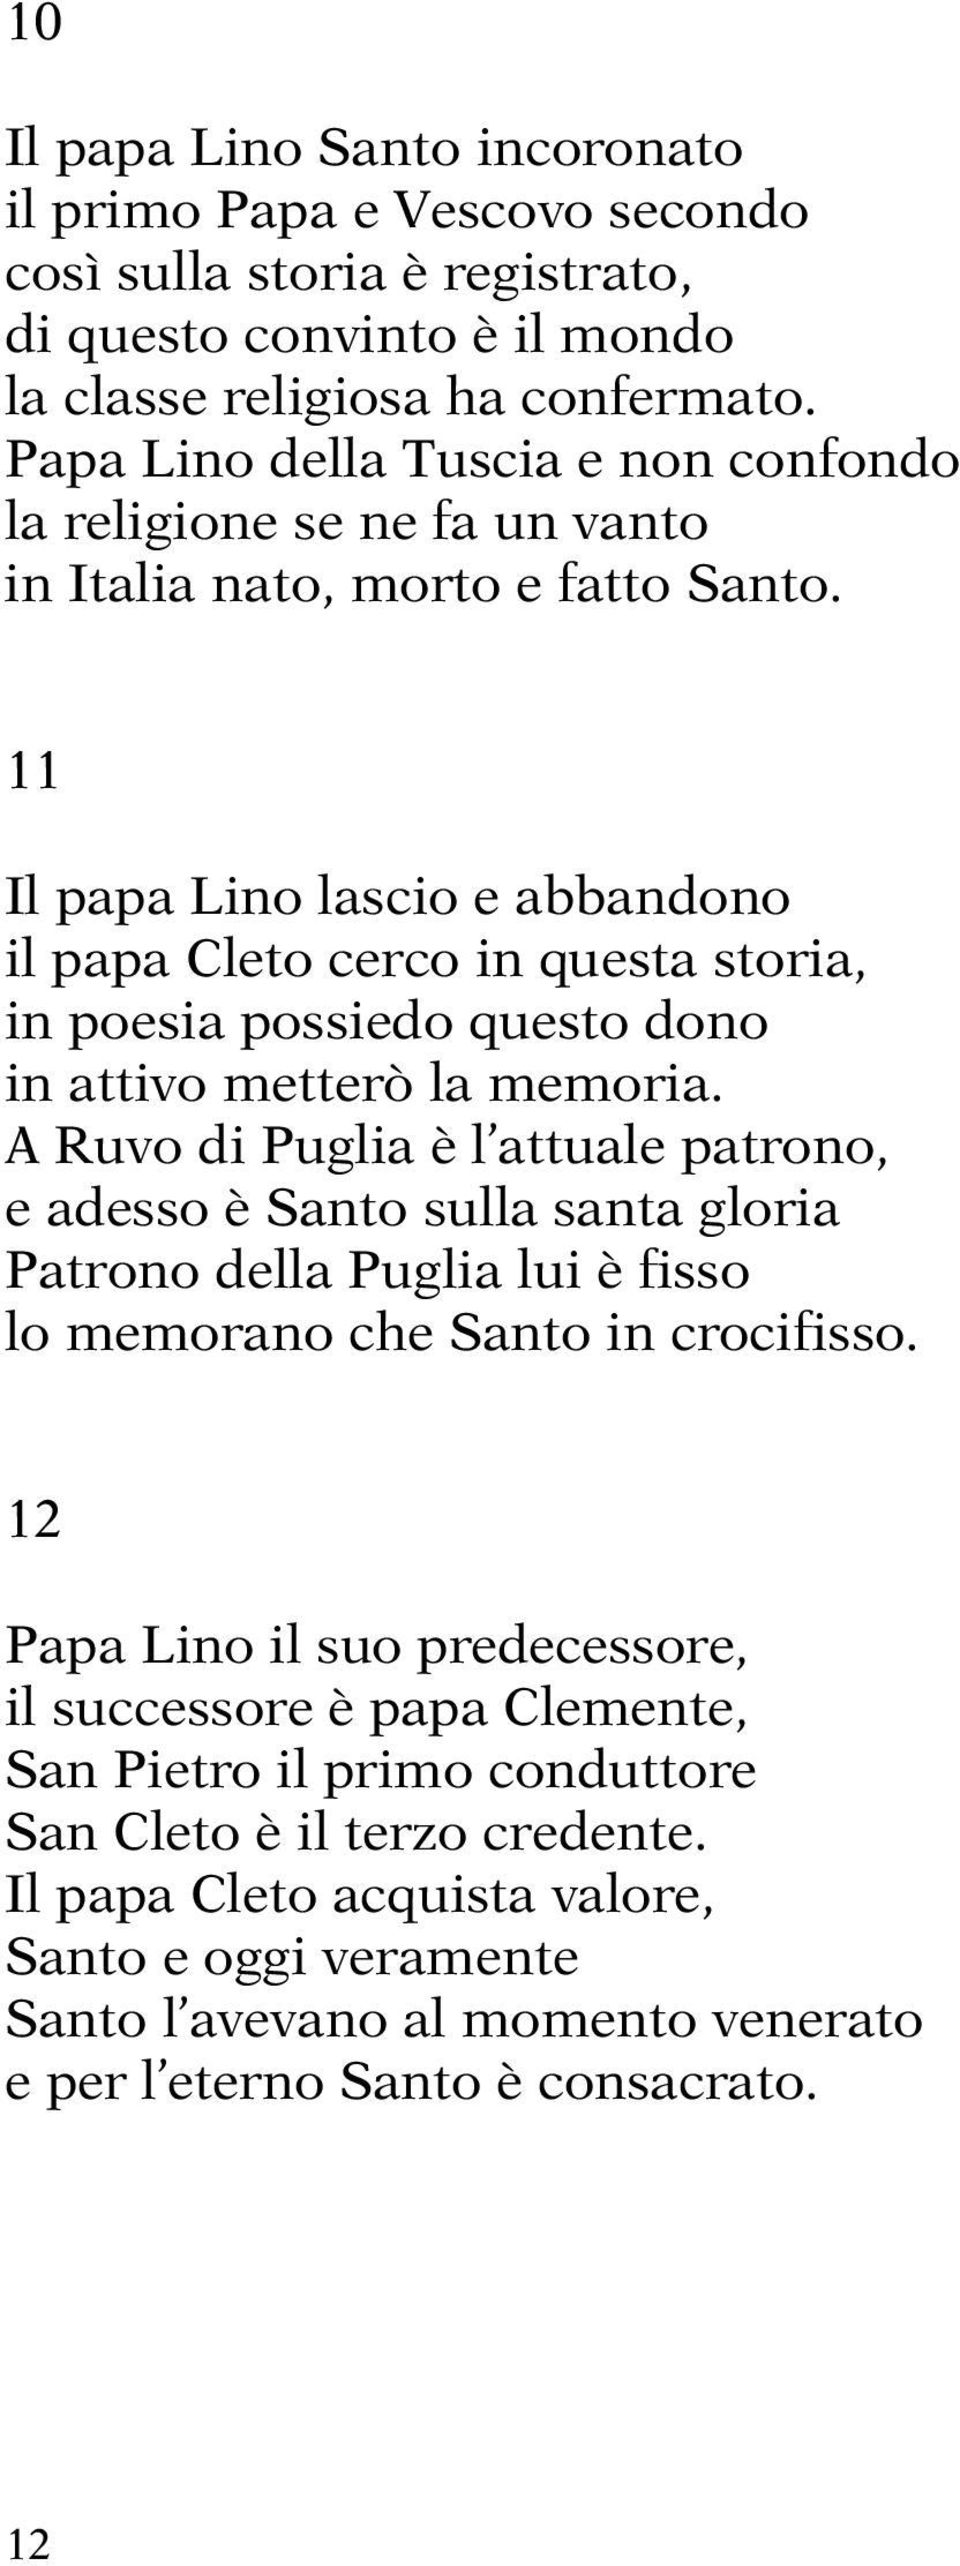 11 Il papa Lino lascio e abbandono il papa Cleto cerco in questa storia, in poesia possiedo questo dono in attivo metterò la memoria.